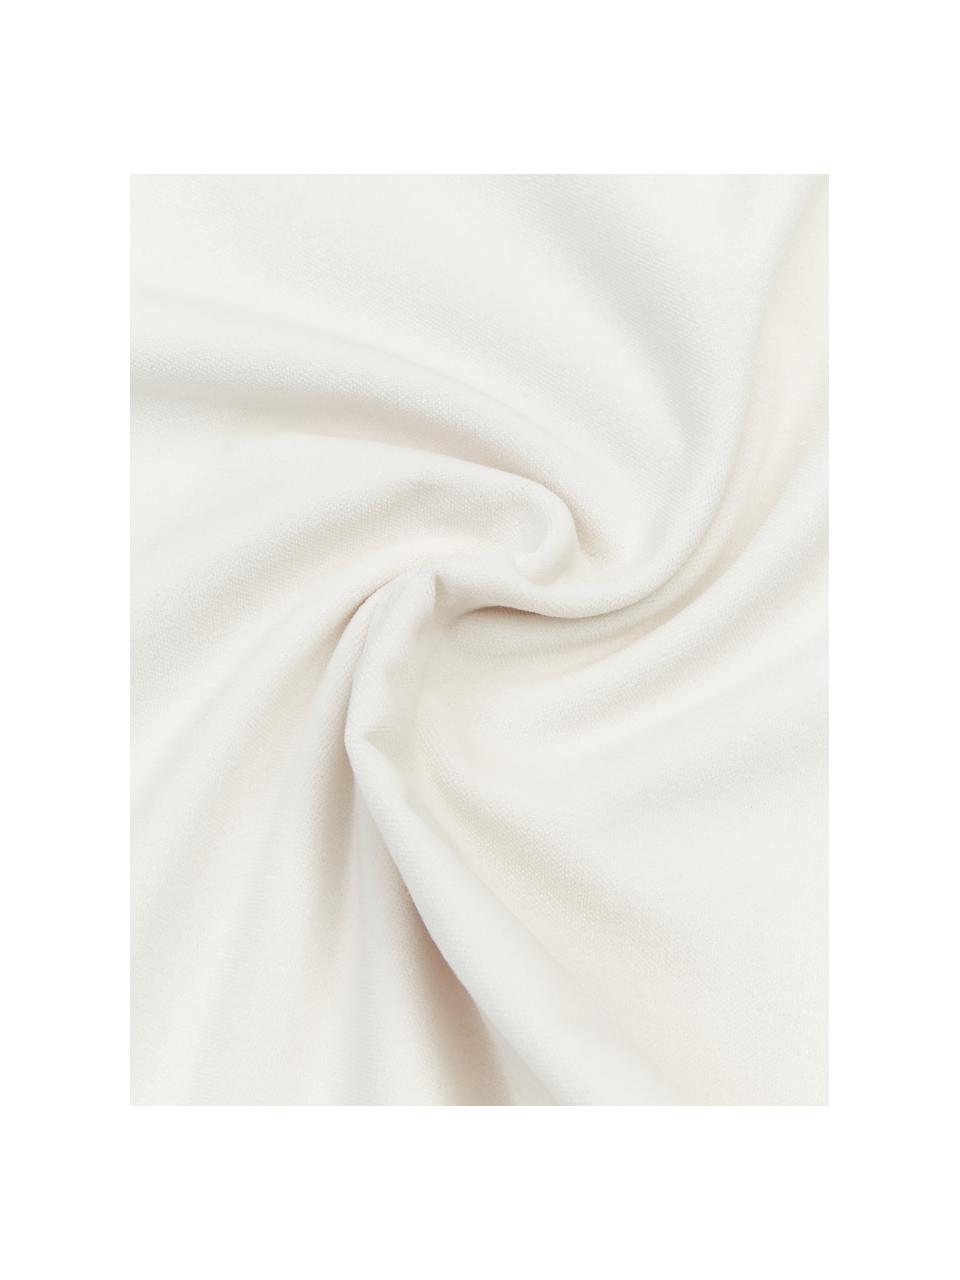 Samt-Kissenhülle Dana, 100% Baumwollsamt, Off White, B 40 x L 40 cm